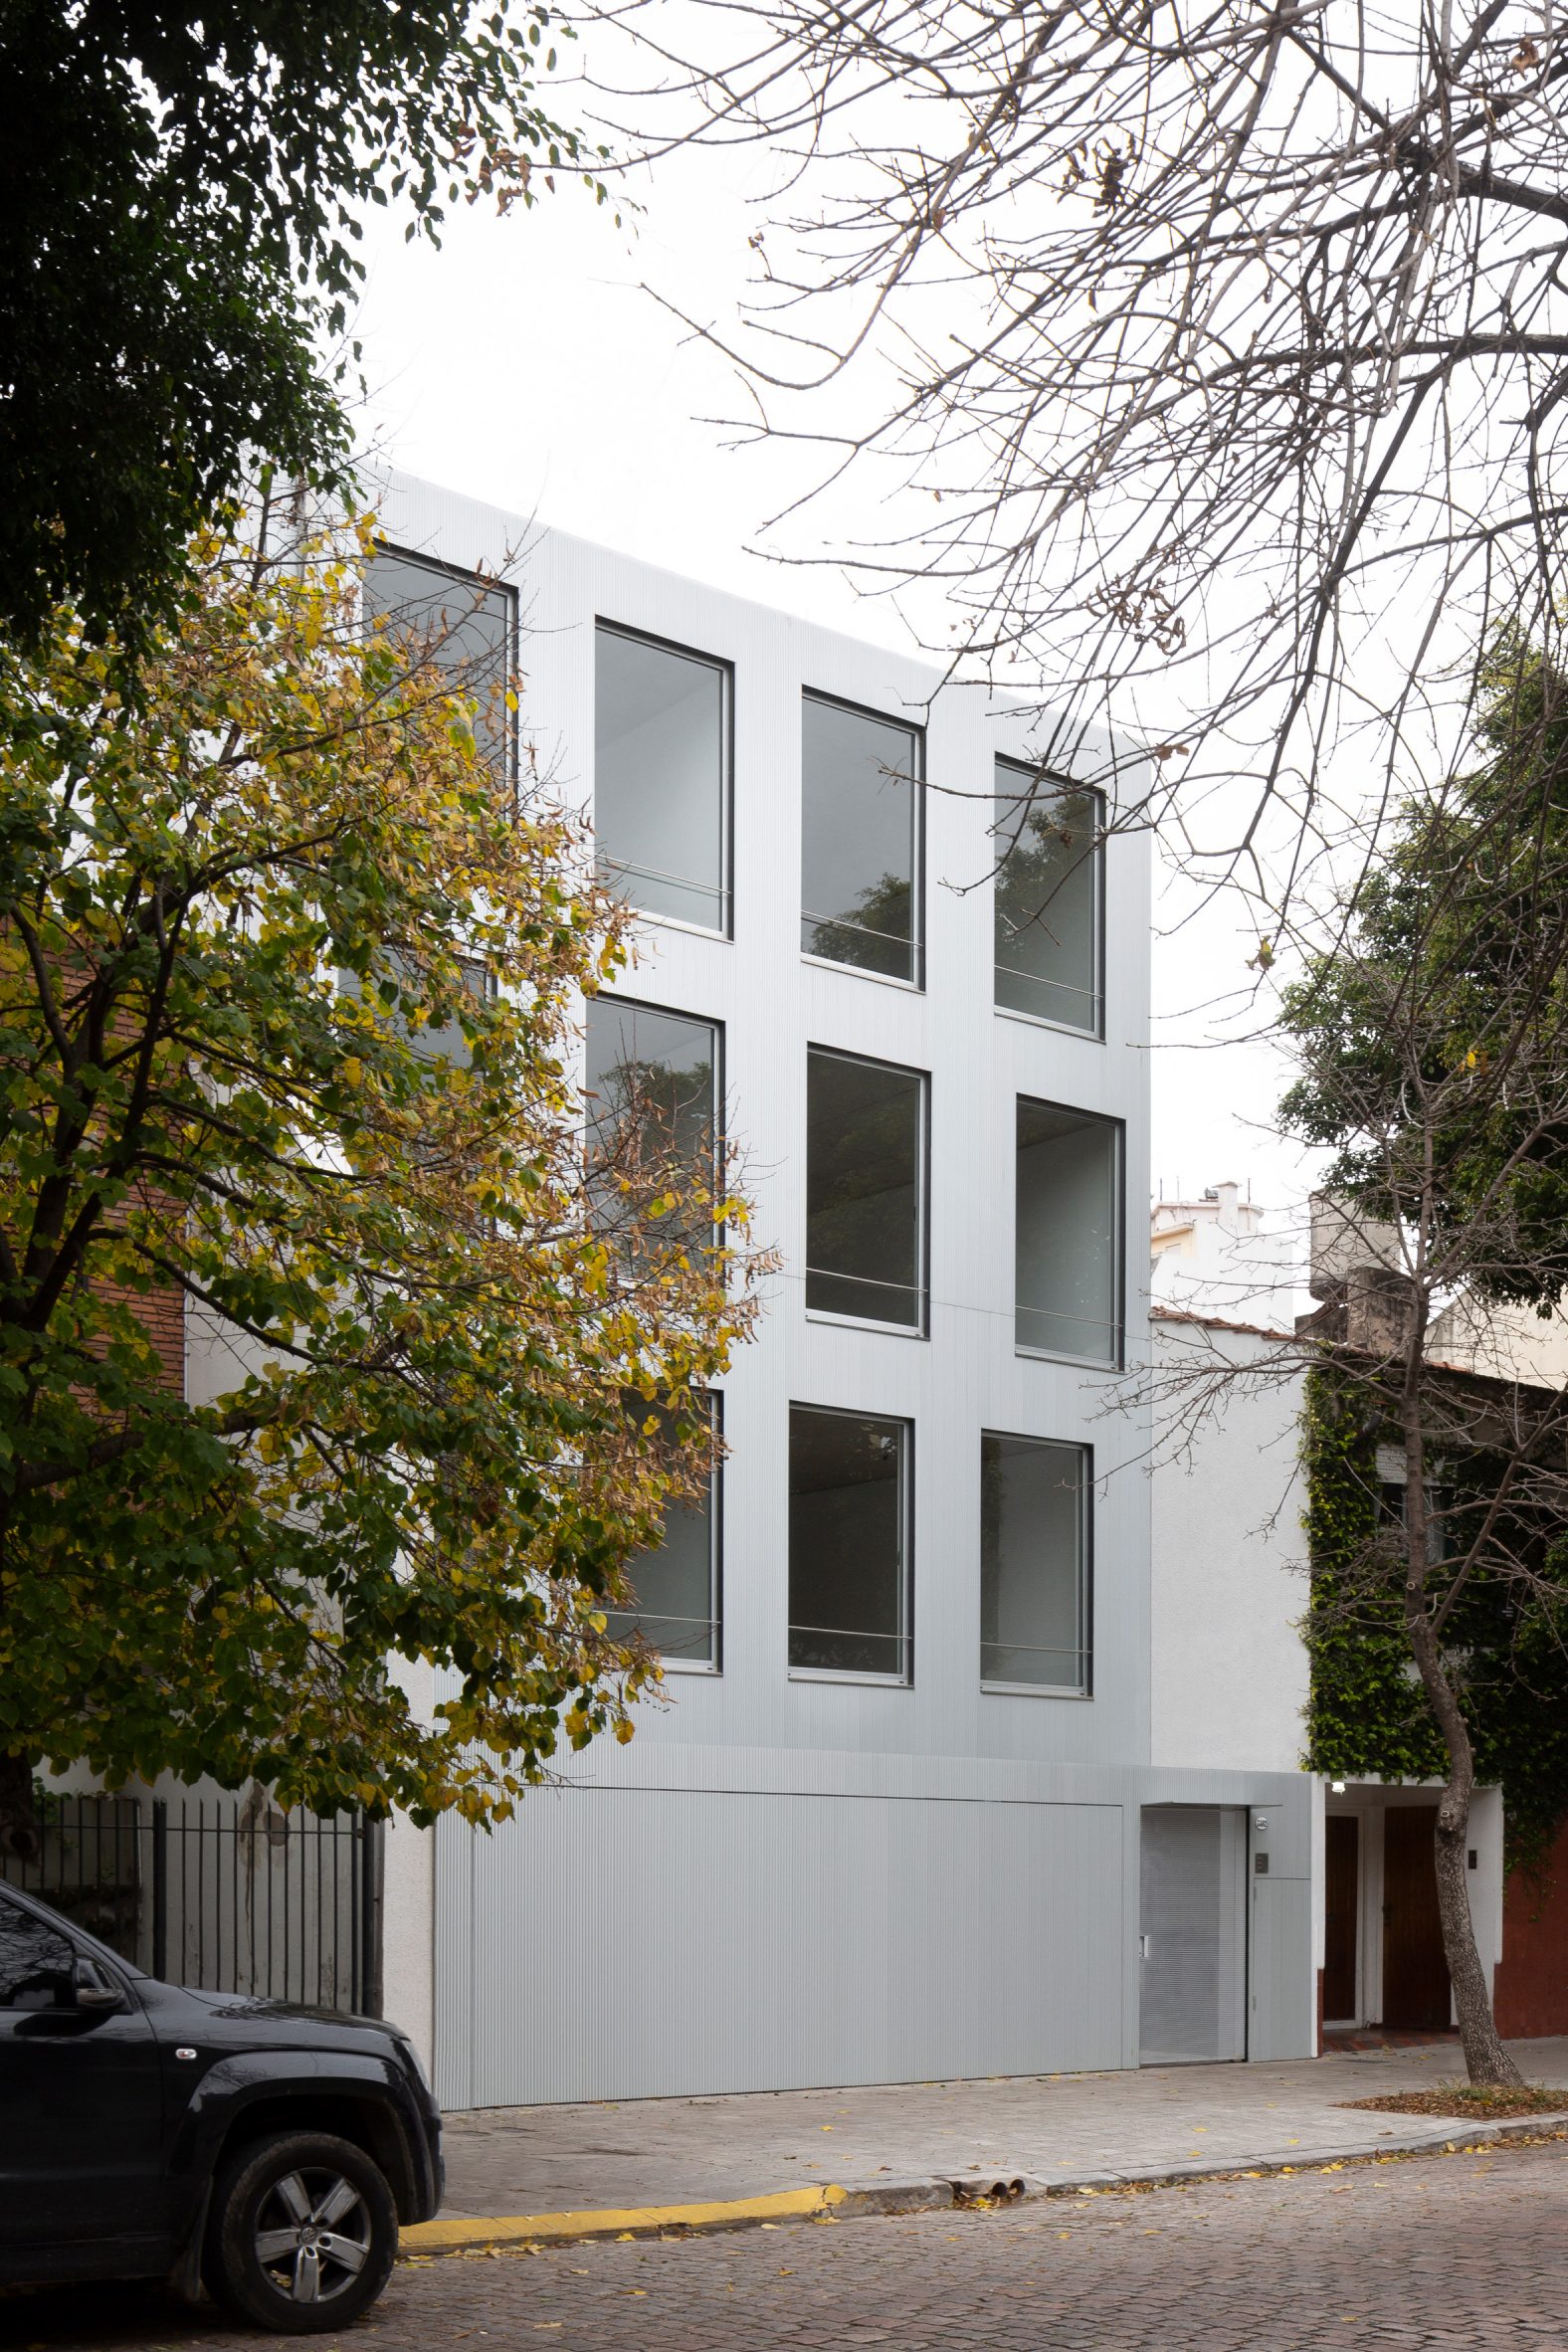 Aluminium Virrey Aviles Street apartments by Juan Campanini and Josefina Sposito